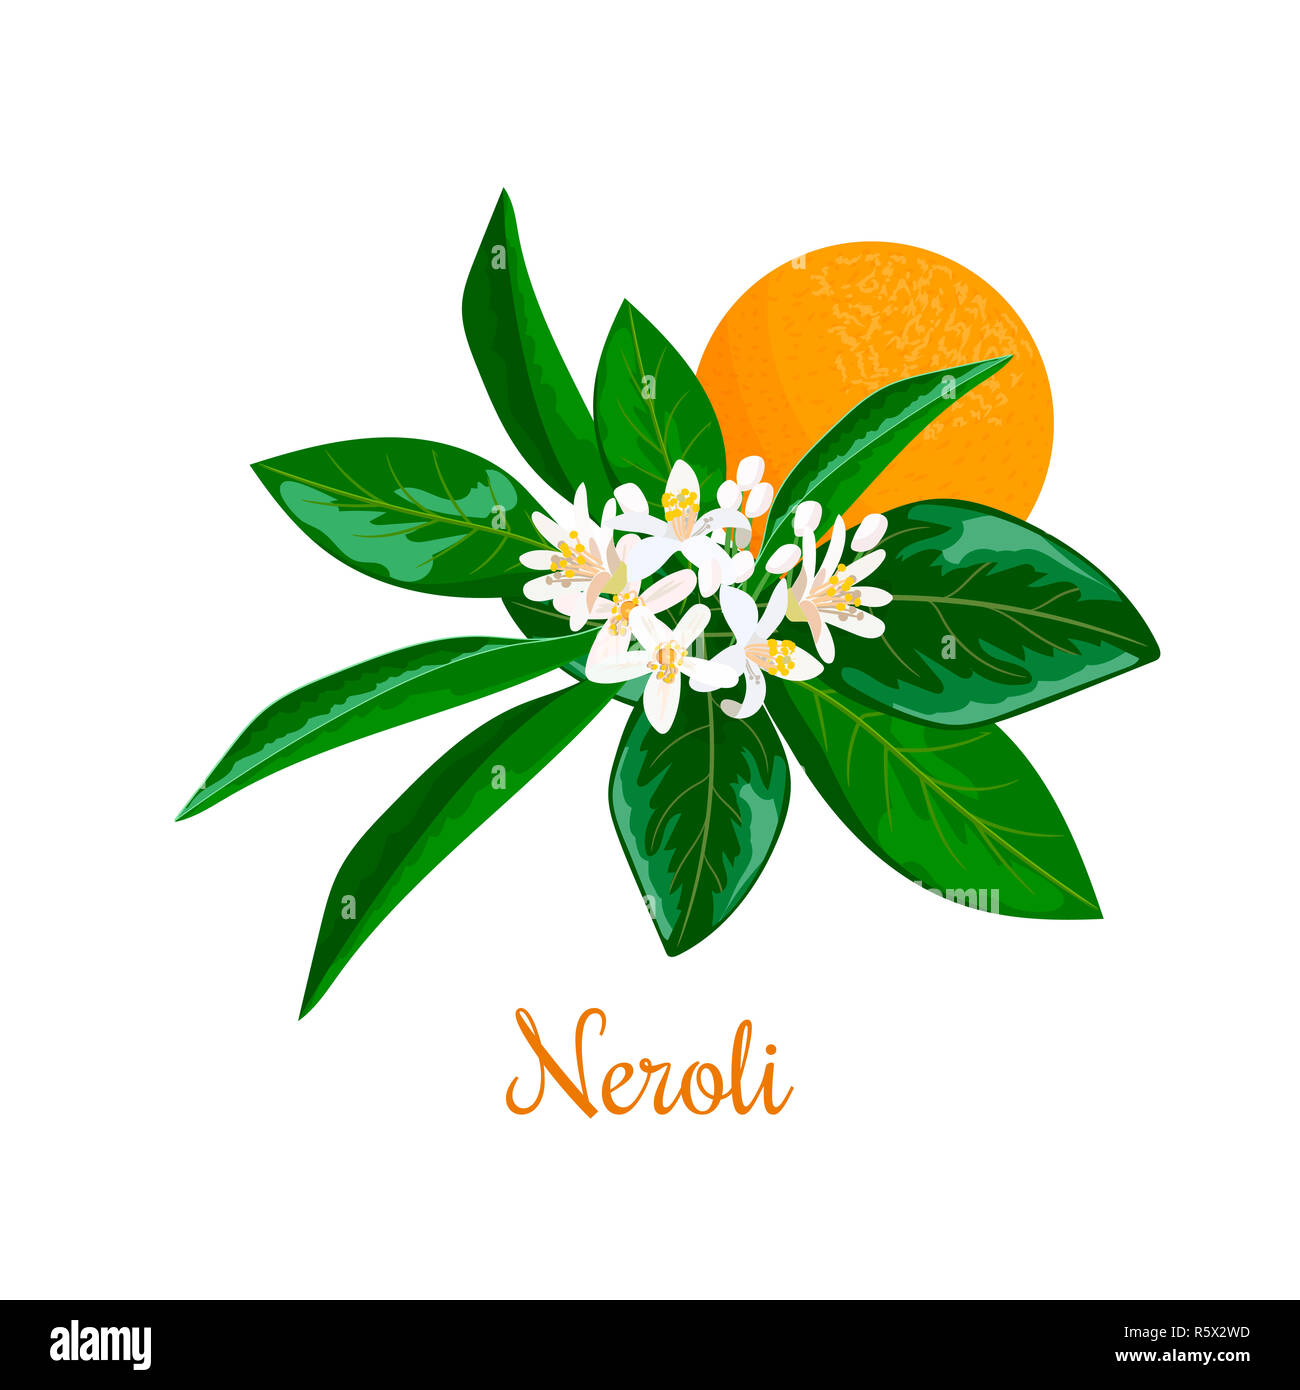 Neroli. bitter orange tree, twig, flowers and fruit Stock Photo